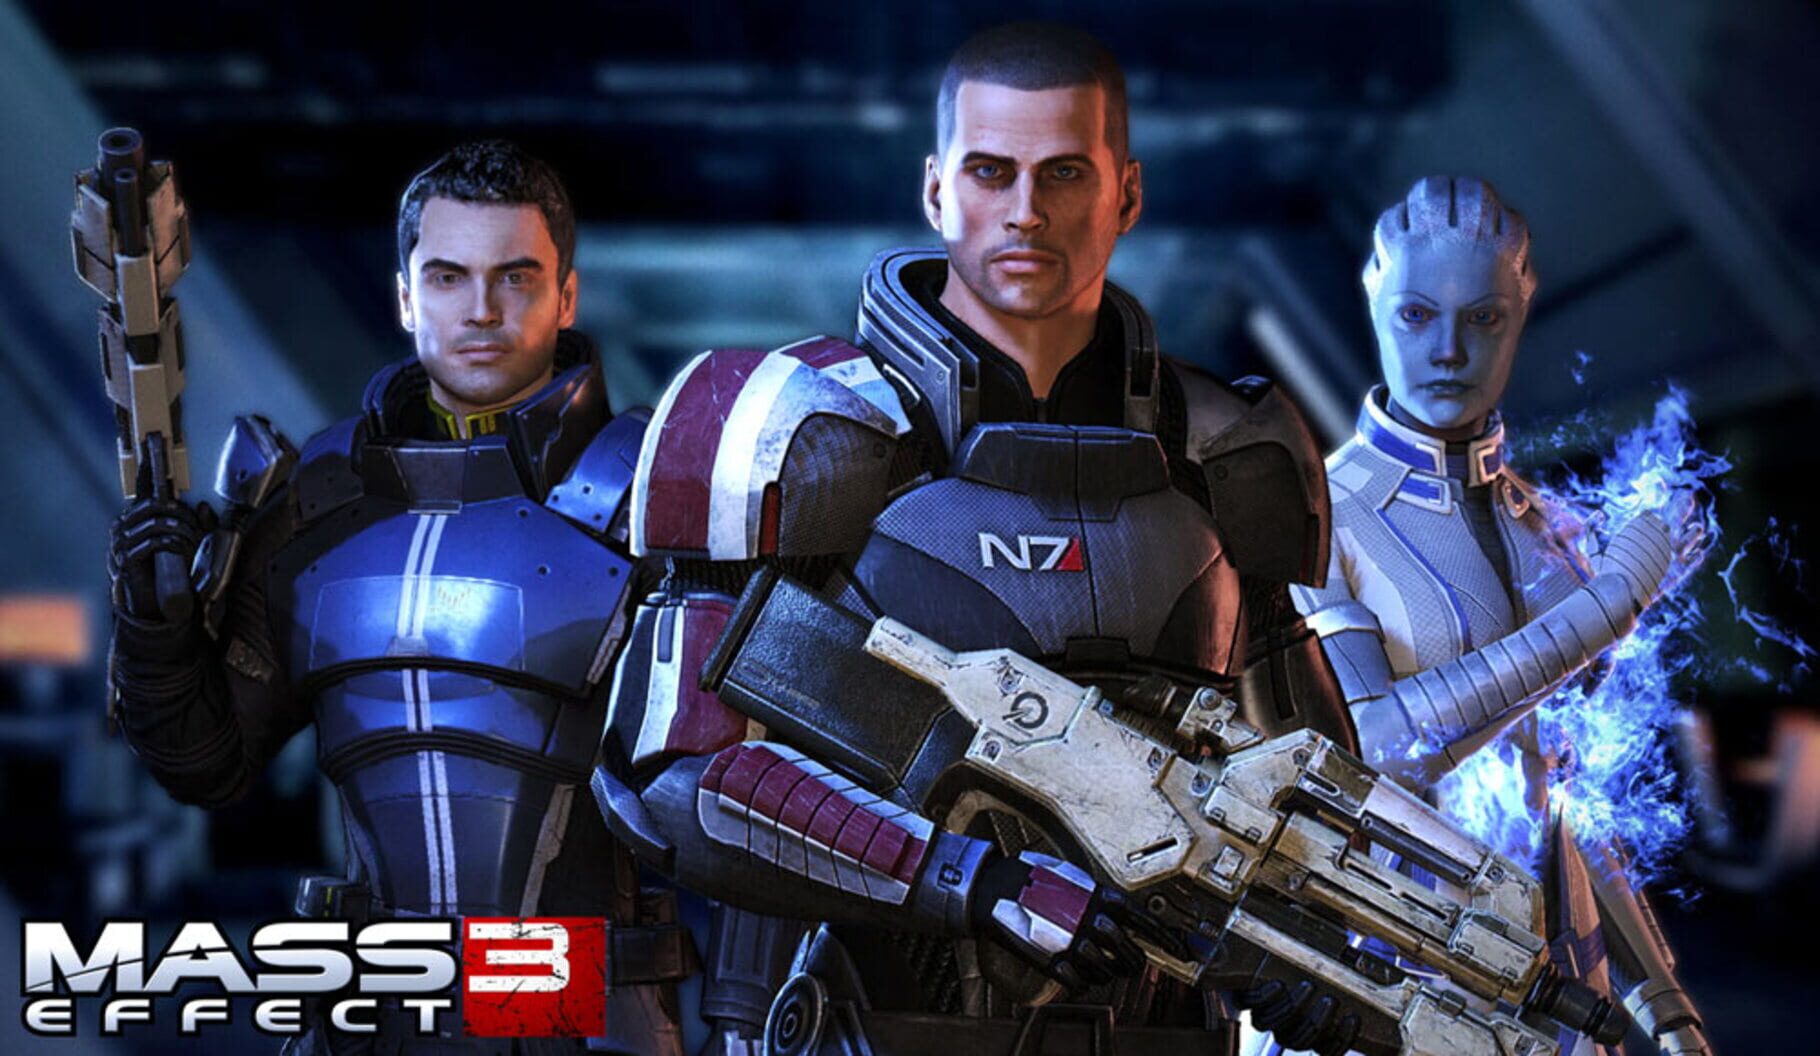 Arte - Mass Effect 3